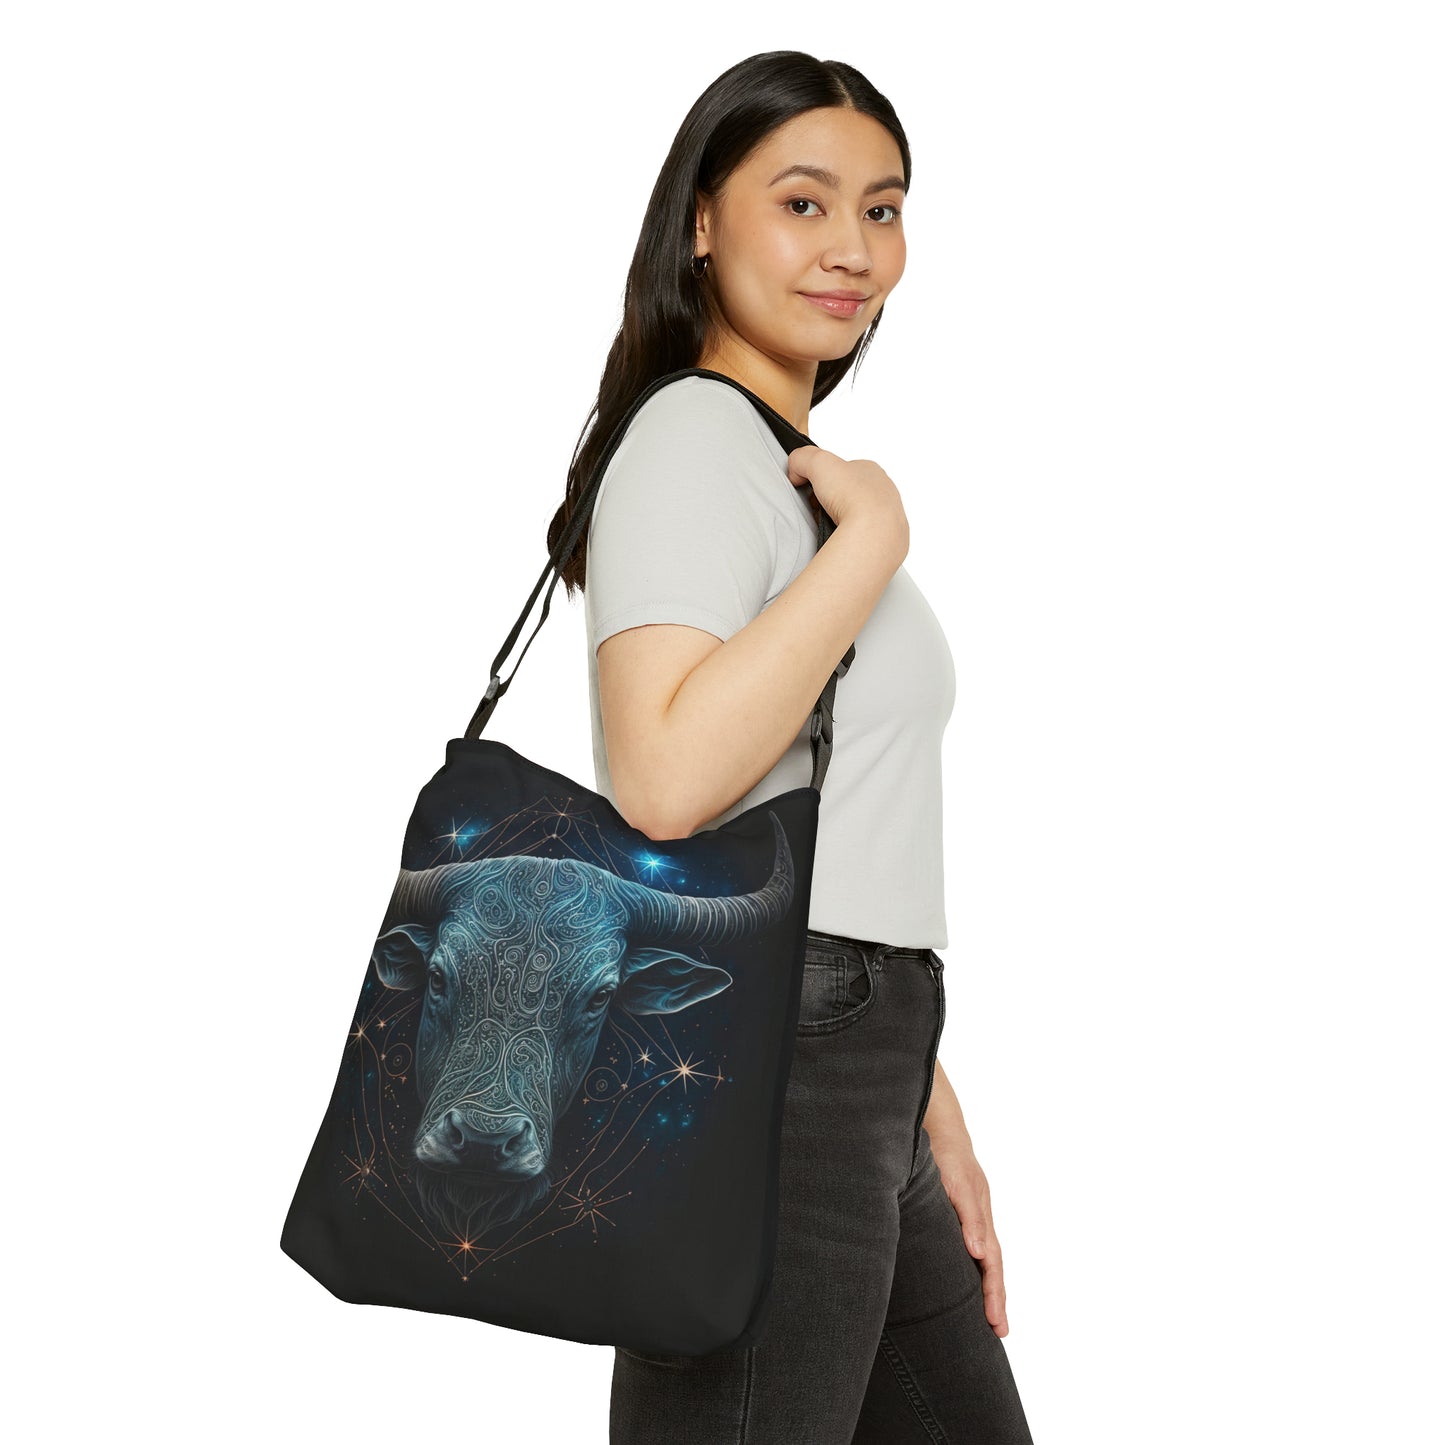 Taurus Tote Bag, Adjustable Tote Bag for Taurus, AOP Horoscope Tote